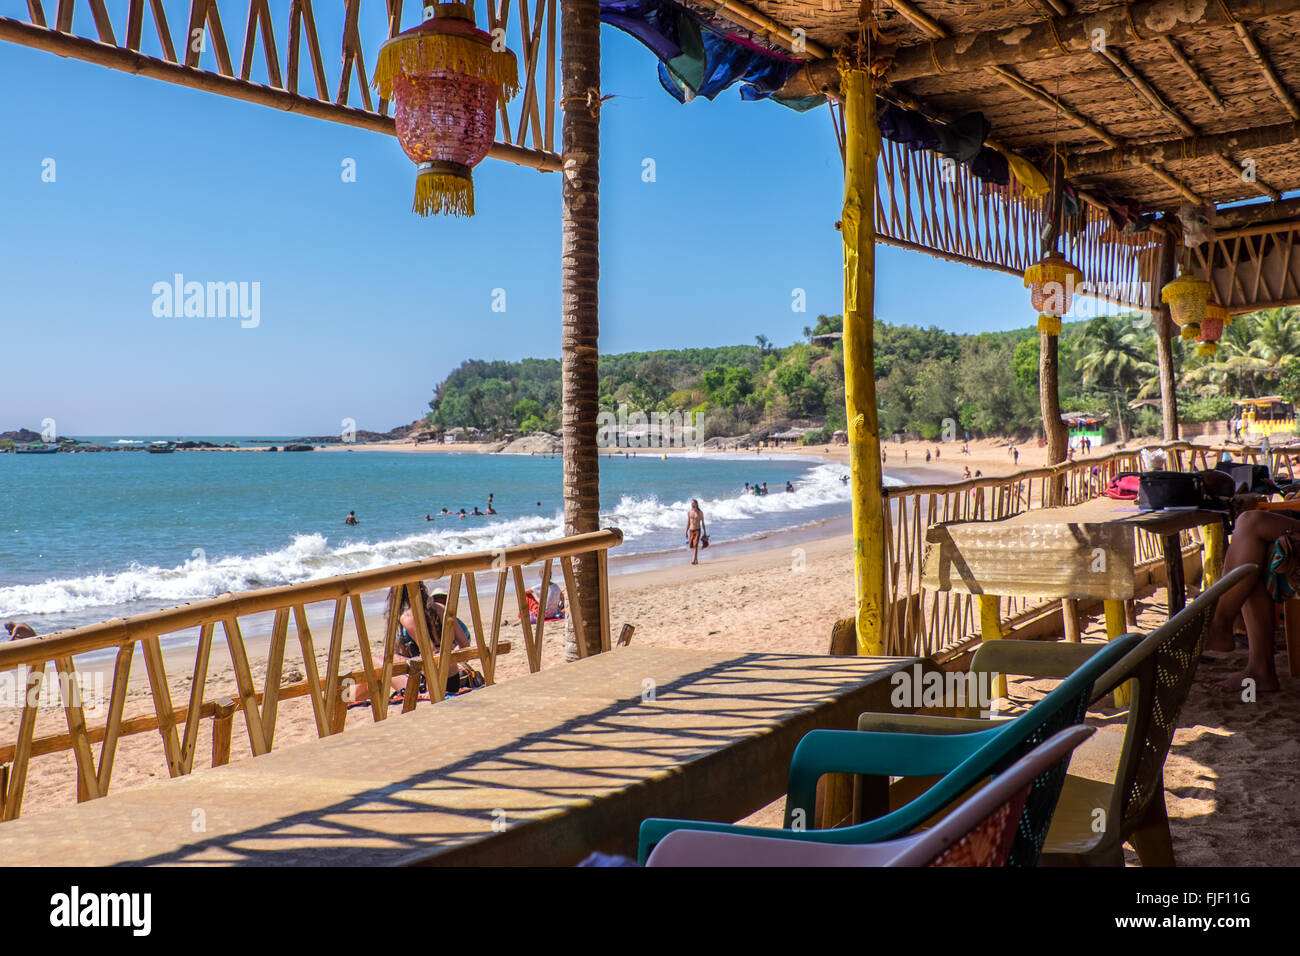 Un ristorante sulla spiaggia sulla spiaggia di Om, Gokarna nello stato indiano del Karnataka. Si tratta di una popolare appendere fuori per backpackers. Foto Stock